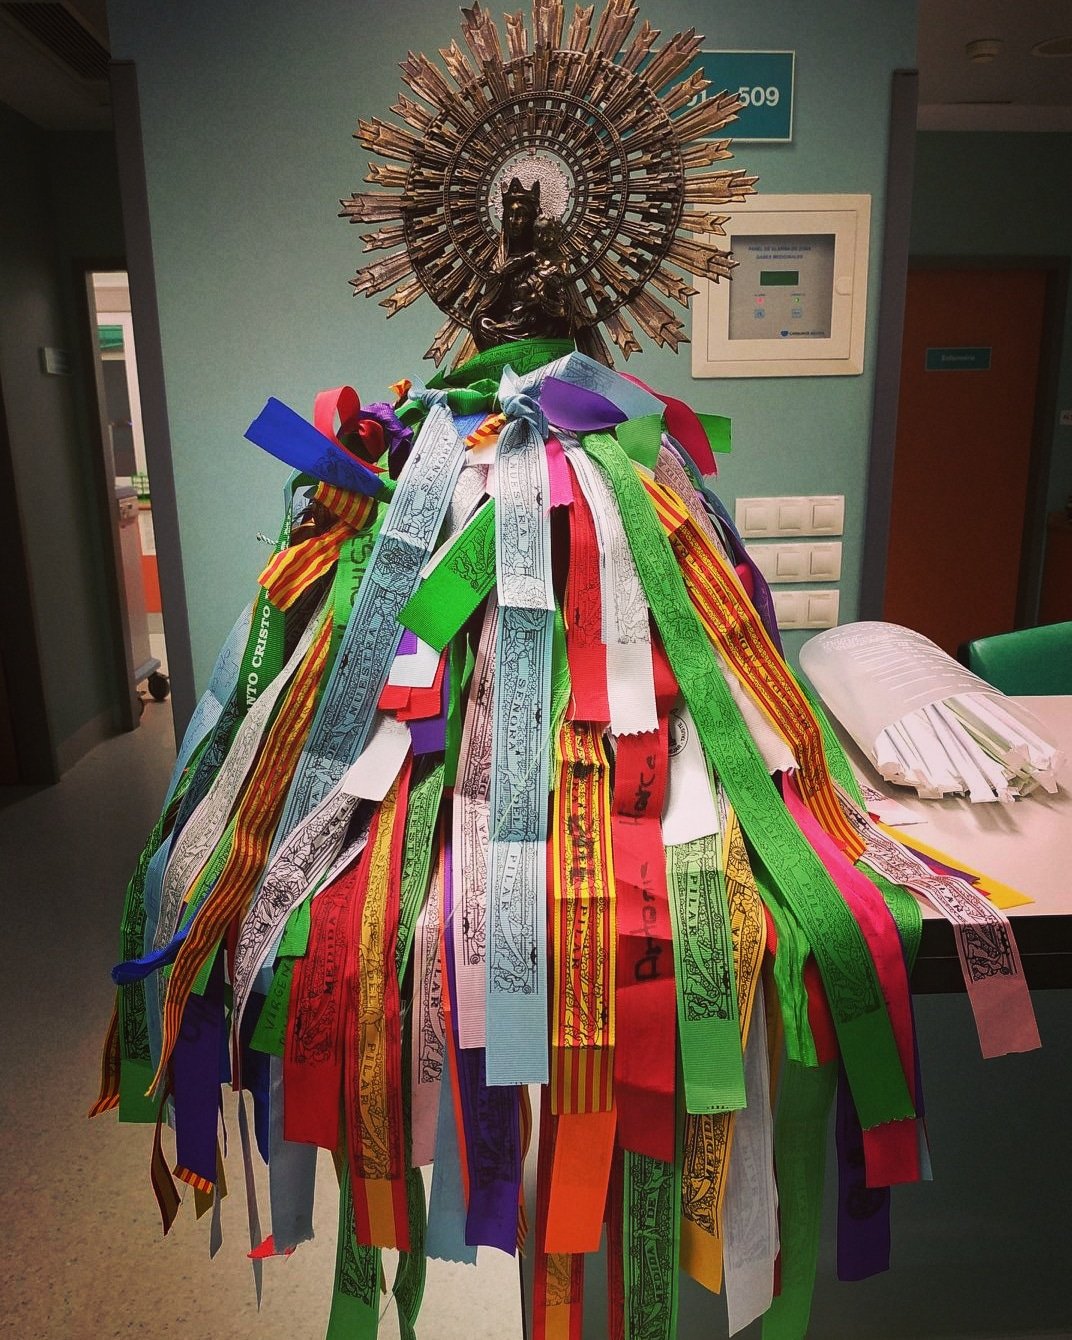 Ofrenda Virgen del Pilar on X: Precioso manto hecho con cintas de la  medida de la Virgen del Pilar con los mejores deseos de muchas personas  hacia sus seres queridos, en la